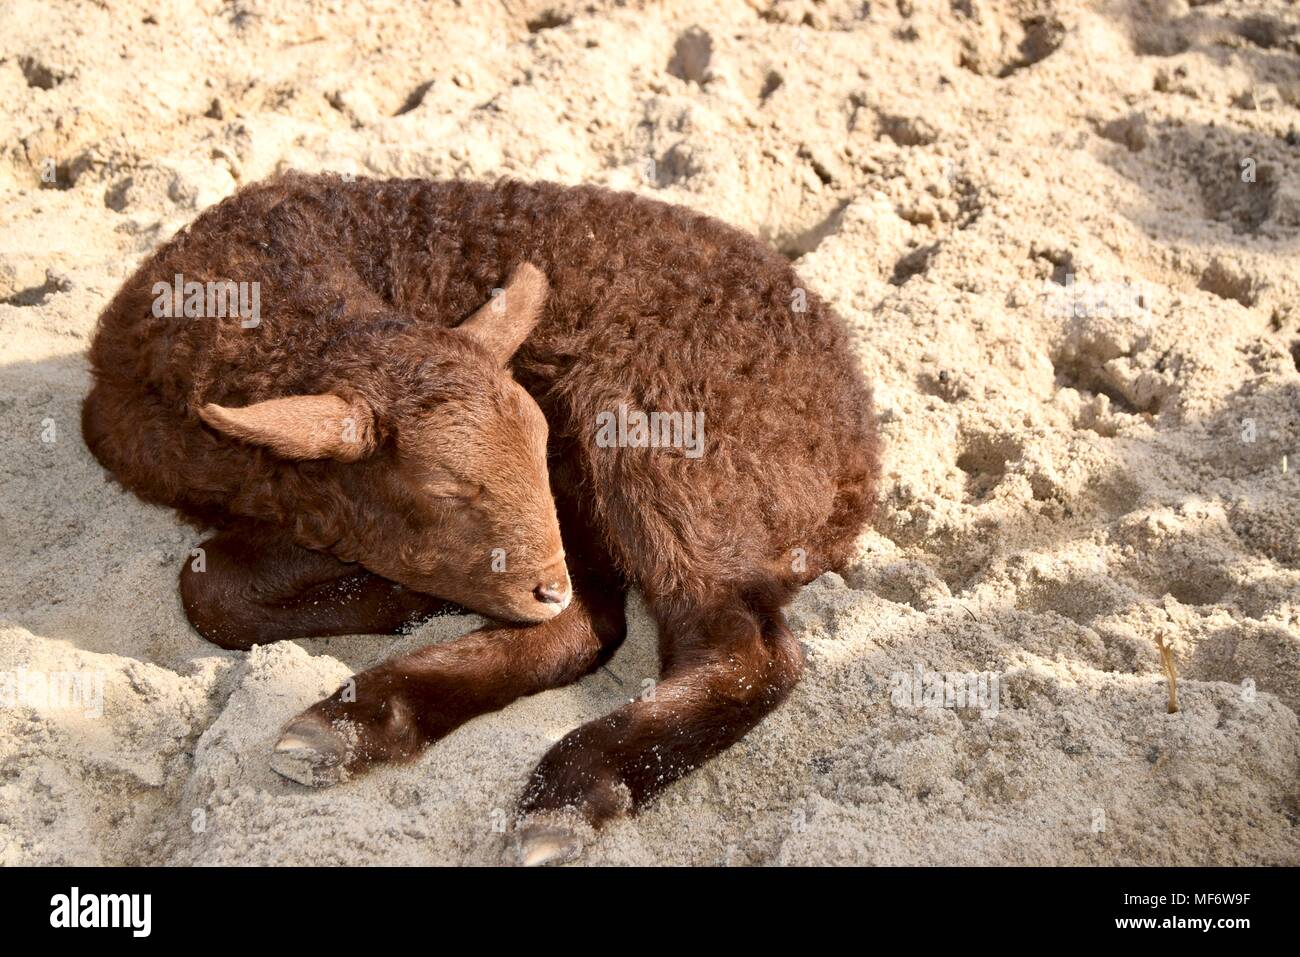 Un peu brown nouvelle agneau né dormir recroquevillé dans le sable sur le plancher. Banque D'Images